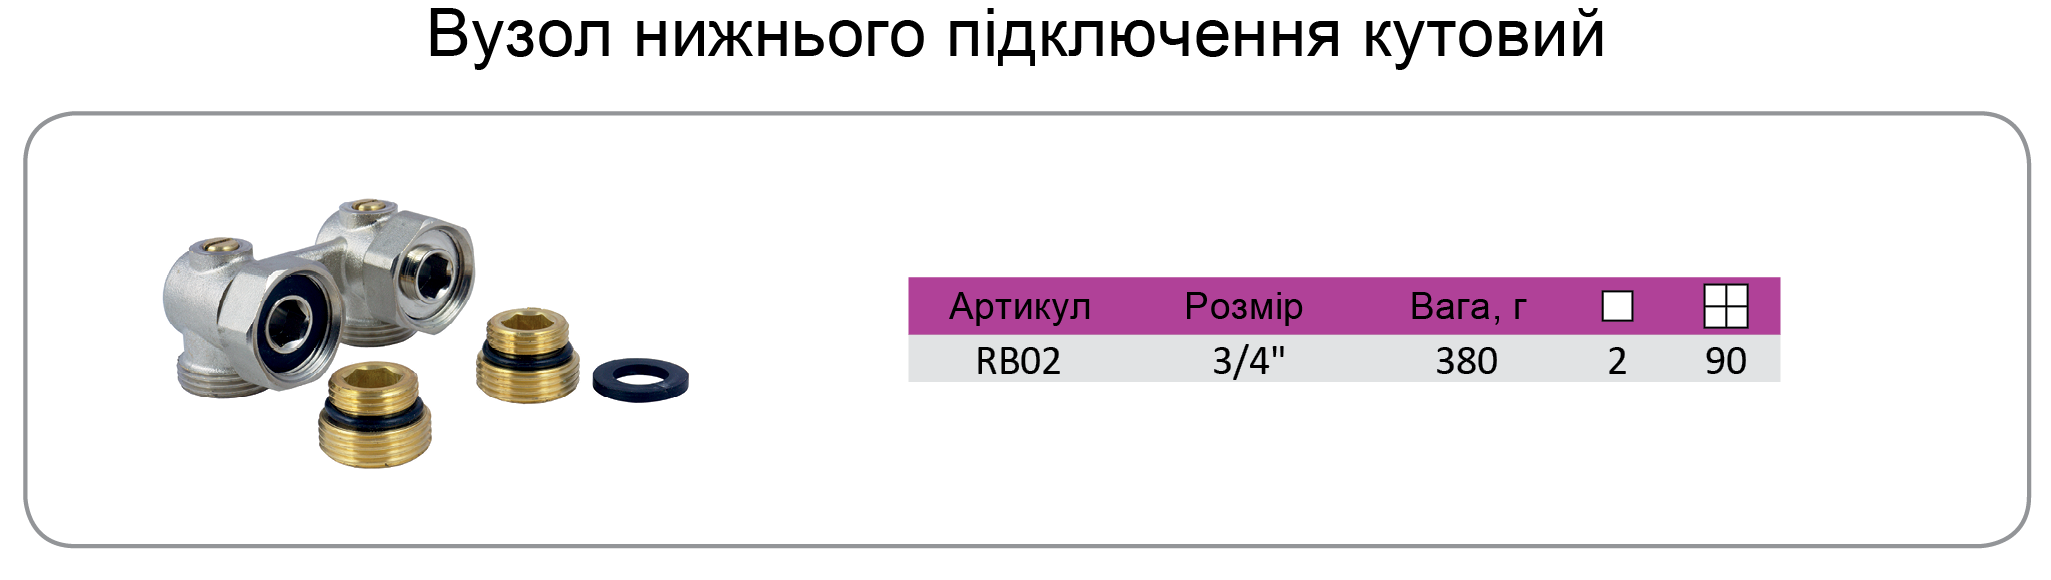 29 RB02-укр